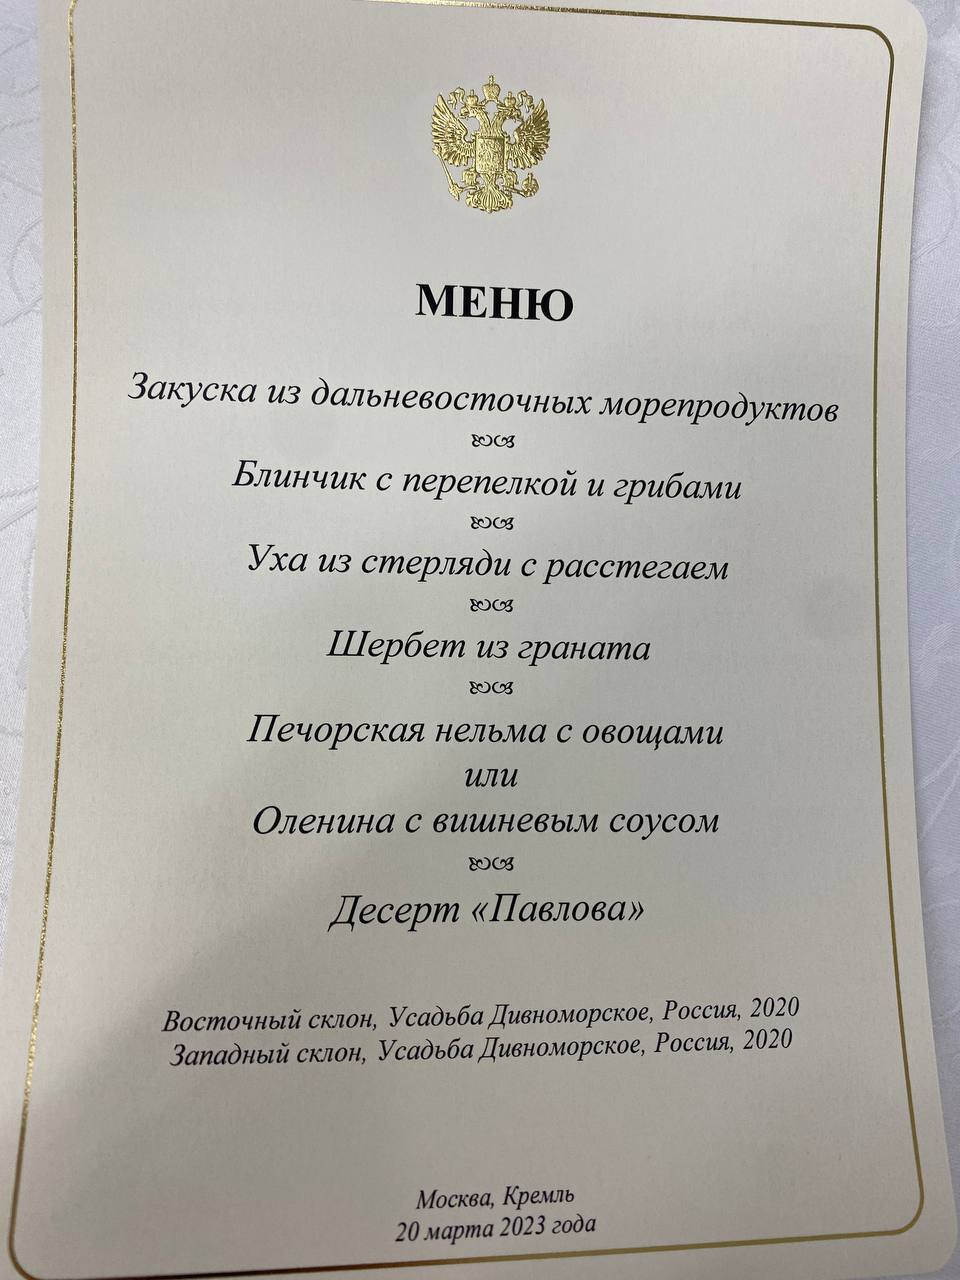 На десерт – Павлова: стало известно, чем угощали Си Цзиньпина в Москве. Фото